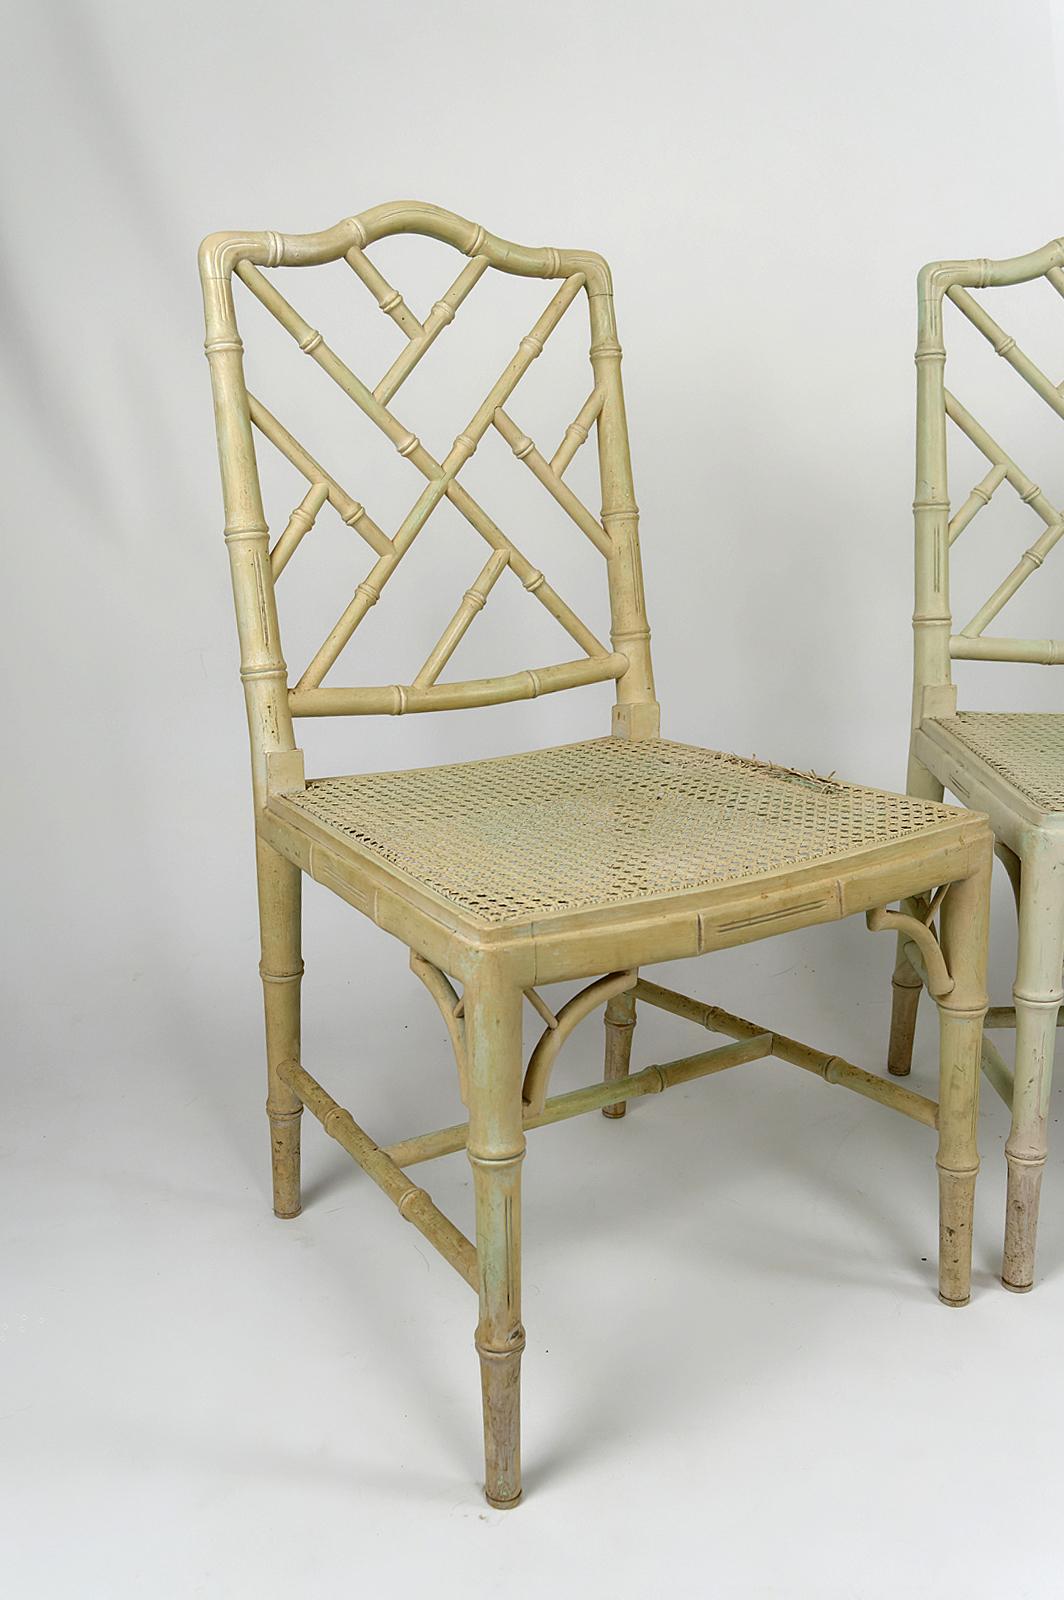 Patiné Ensemble de 3 chaises de style Japonisme / Aesthetic Movement, France, vers 1900 en vente